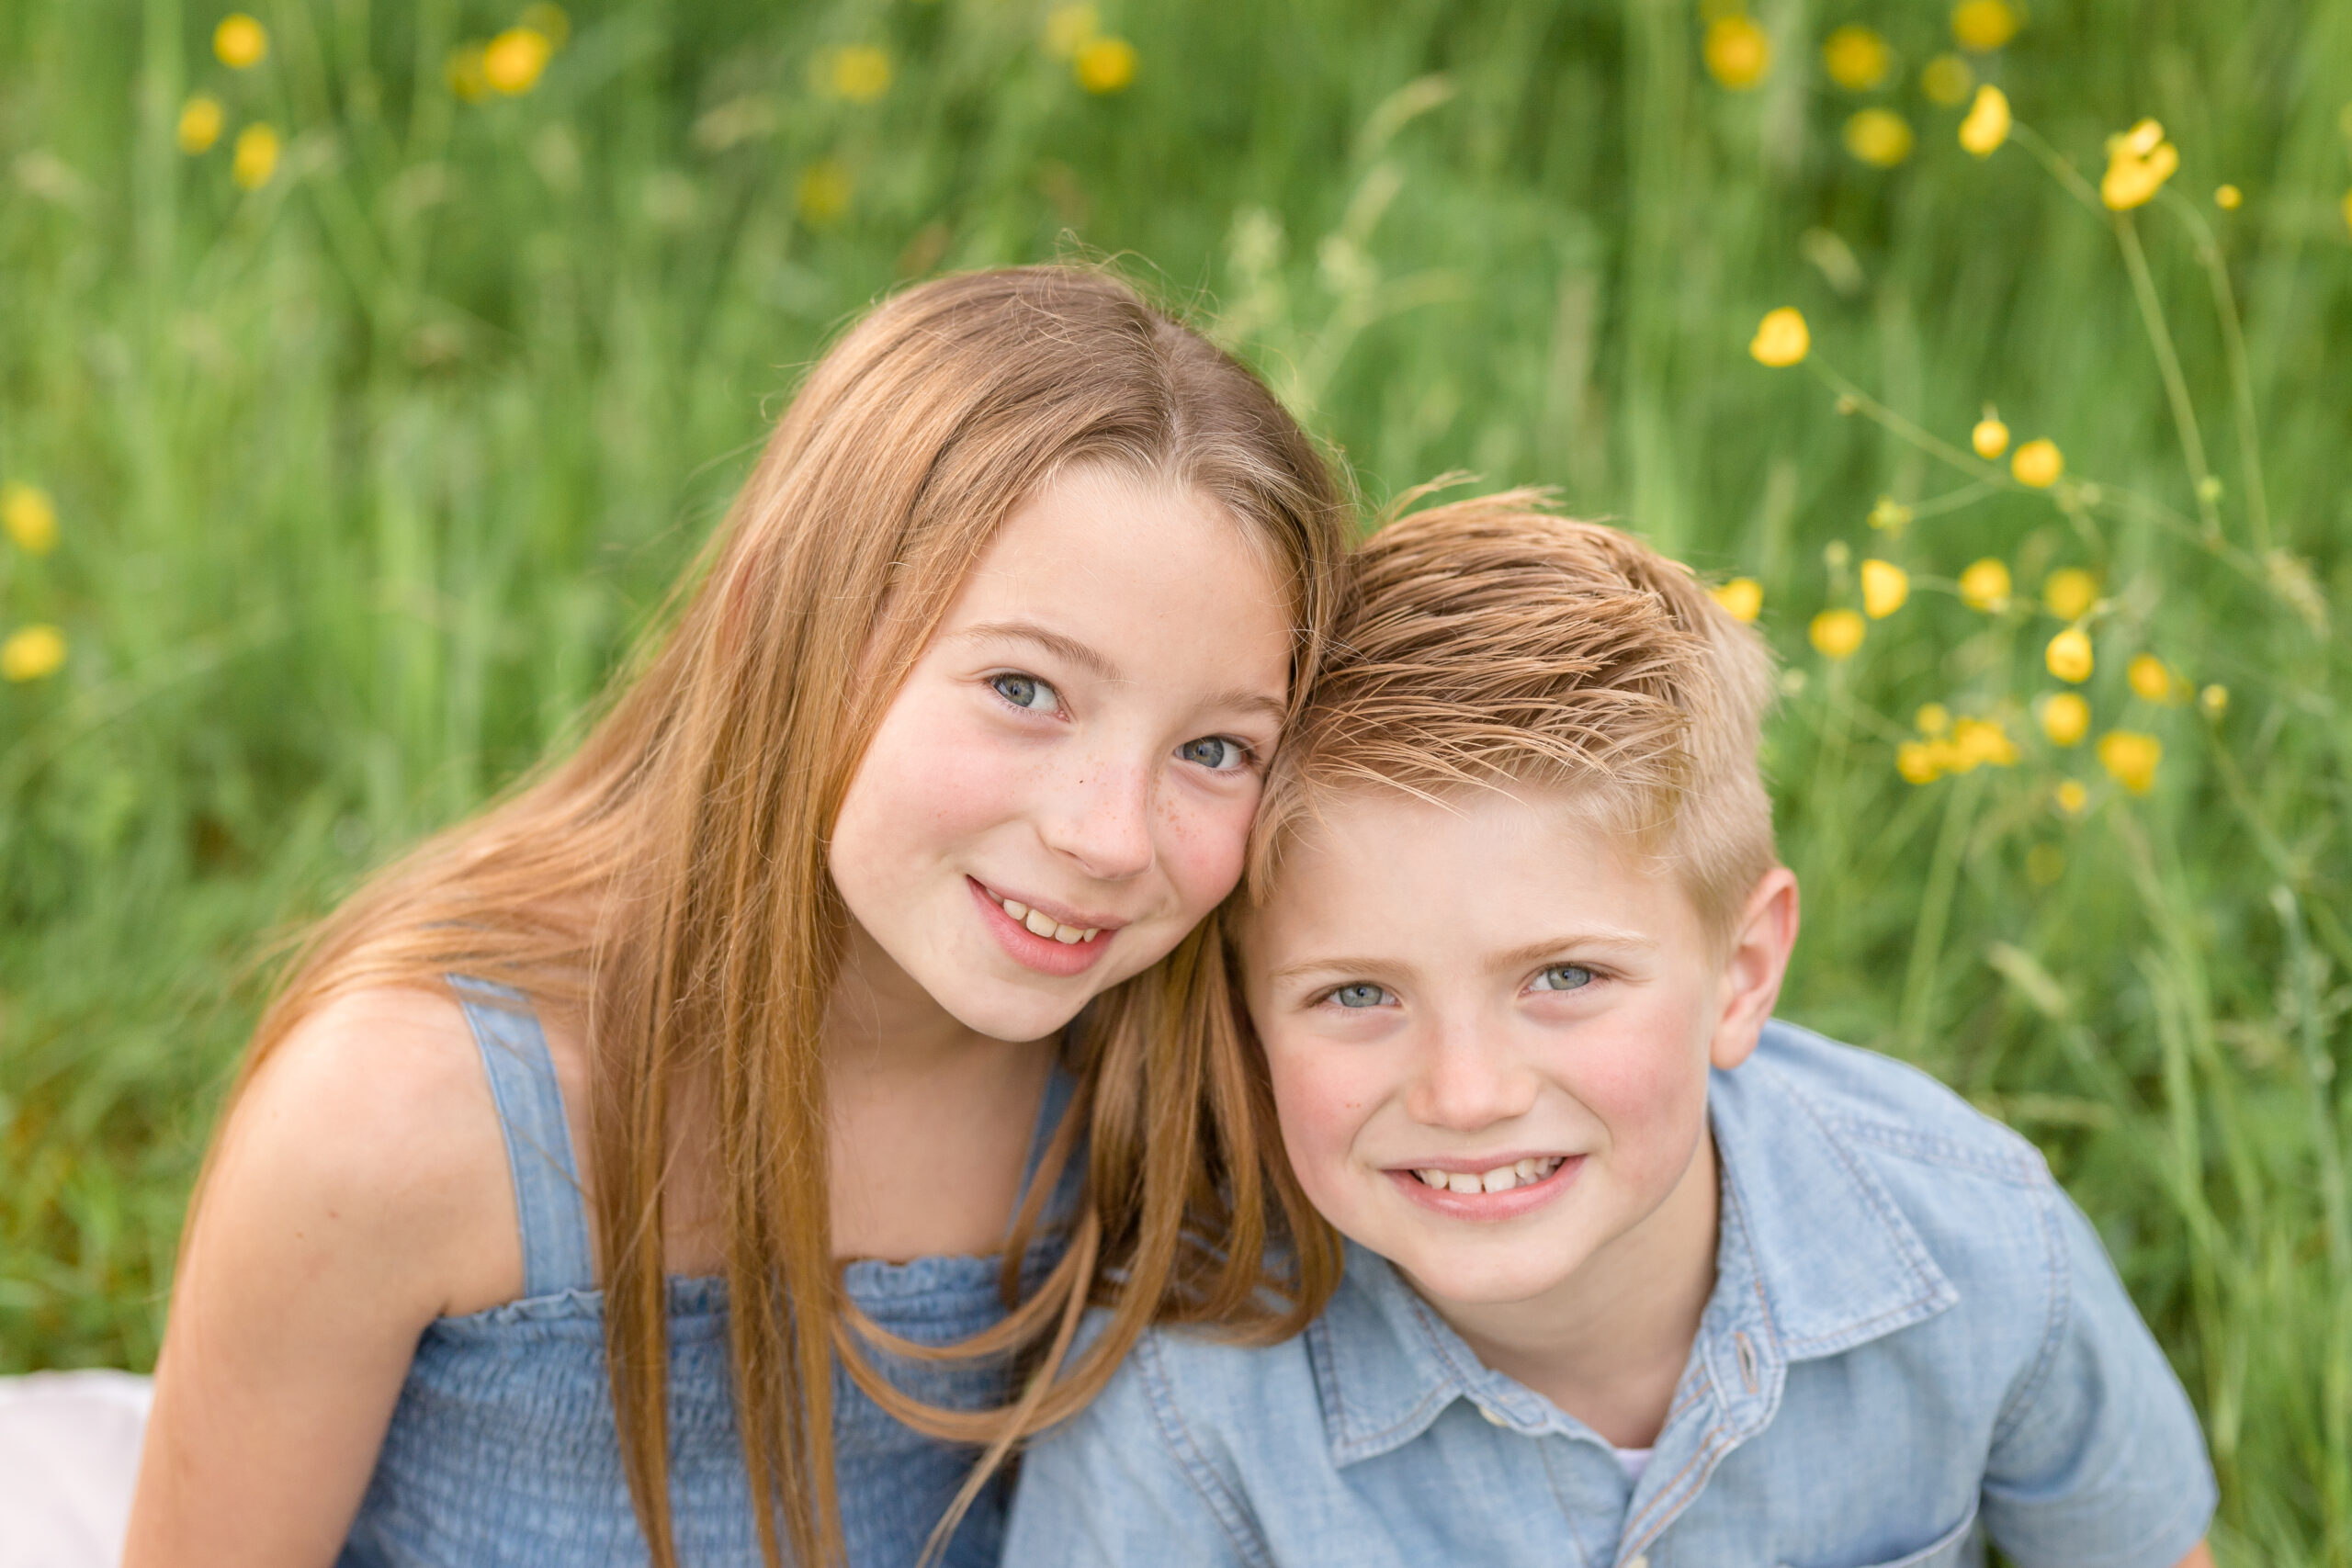 siblings wearing blue in a wildflower field